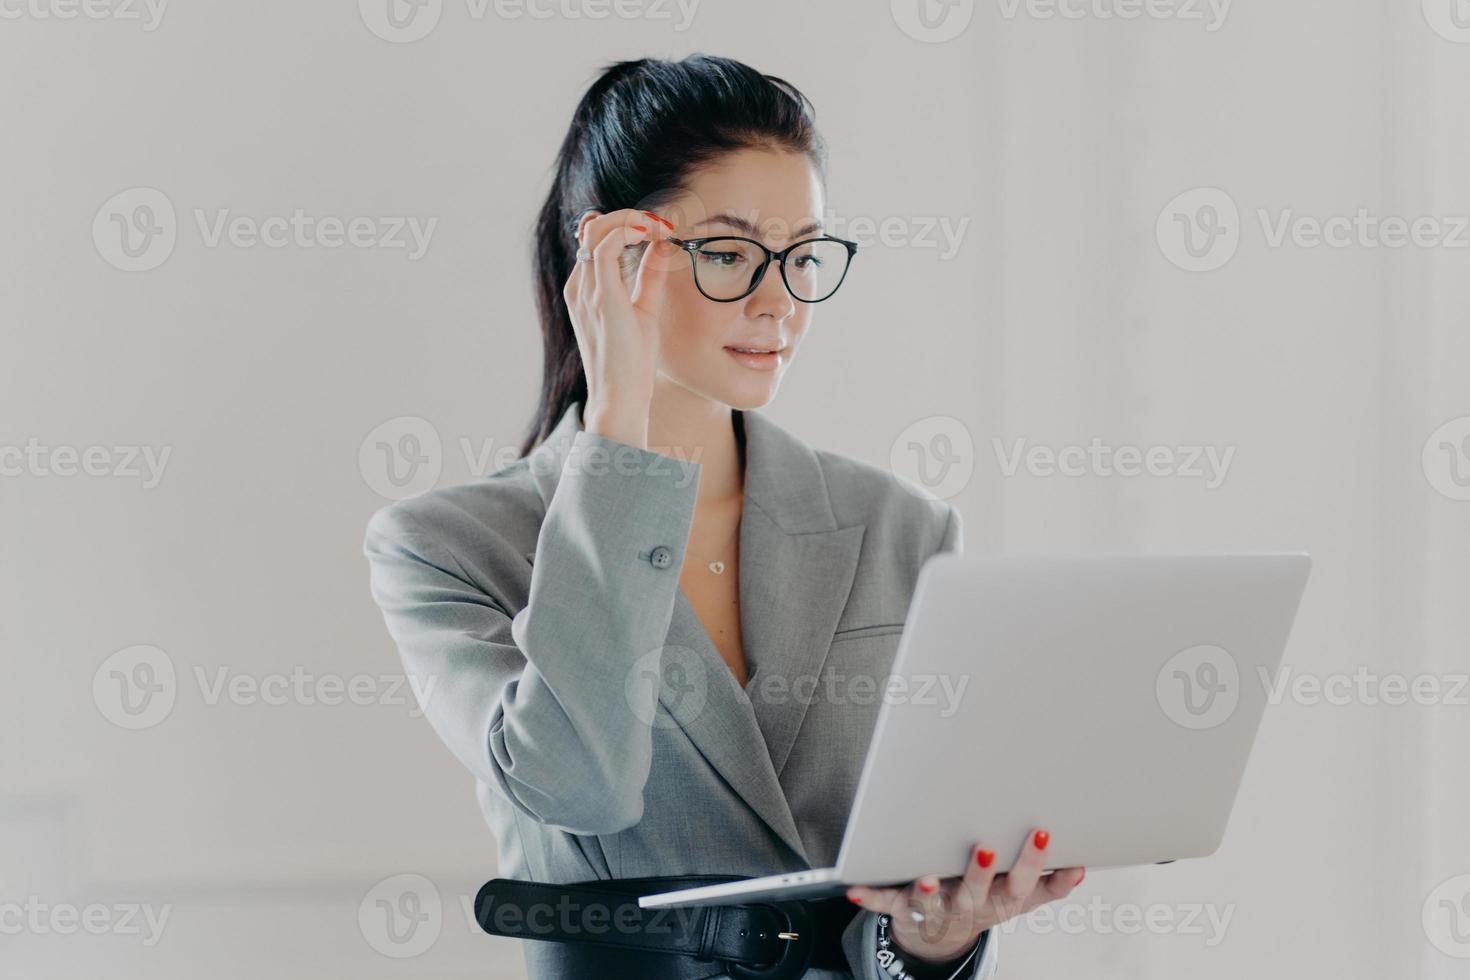 Foto eines ernsthaften leitenden Angestellten, der sich auf einen Laptop-Bildschirm konzentriert, trägt eine transparente Brille zur Sehkorrektur, durchsucht die Internetseite, gekleidet in elegante formelle Kleidung, steht an einer weißen Wand